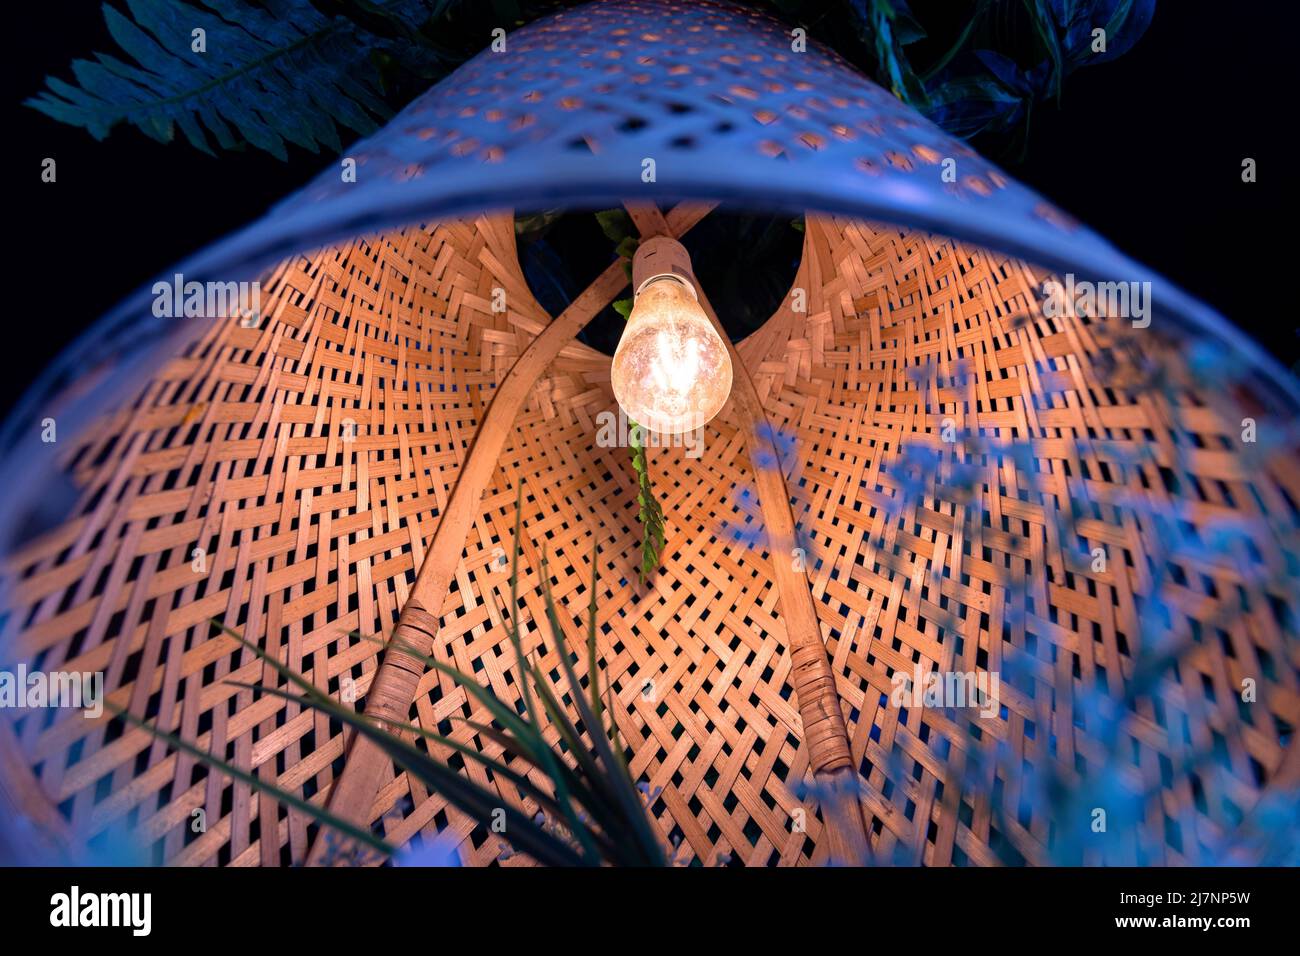 Eine Lampe mit einem Lampenschirm aus Korbholz, schöne Ansicht von unten. Gemütliche Atmosphäre, warmes Licht, umweltfreundliche Materialien. Stockfoto